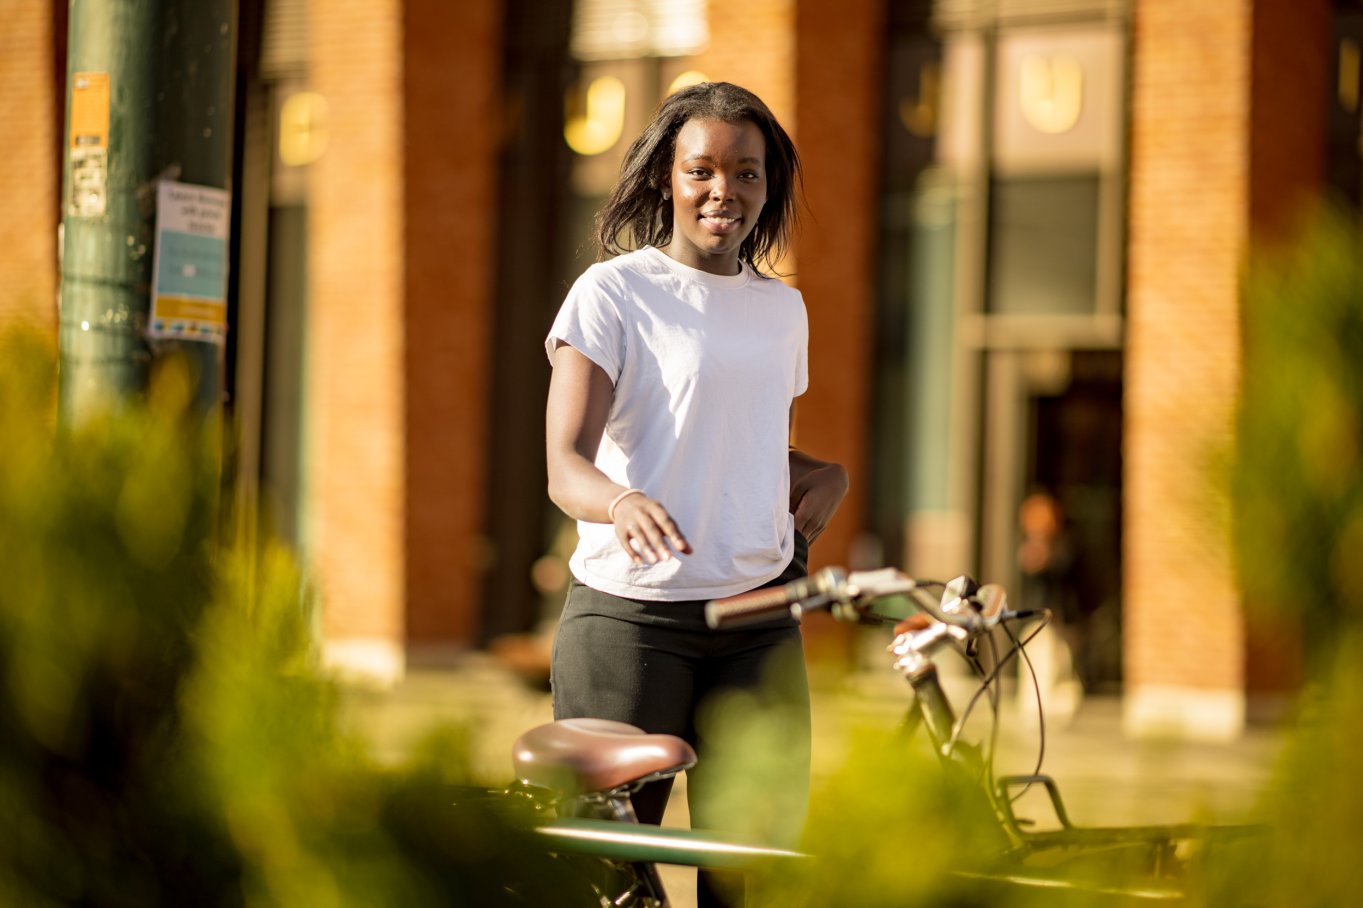 Student med sykkel ute i vårlige omgivelser